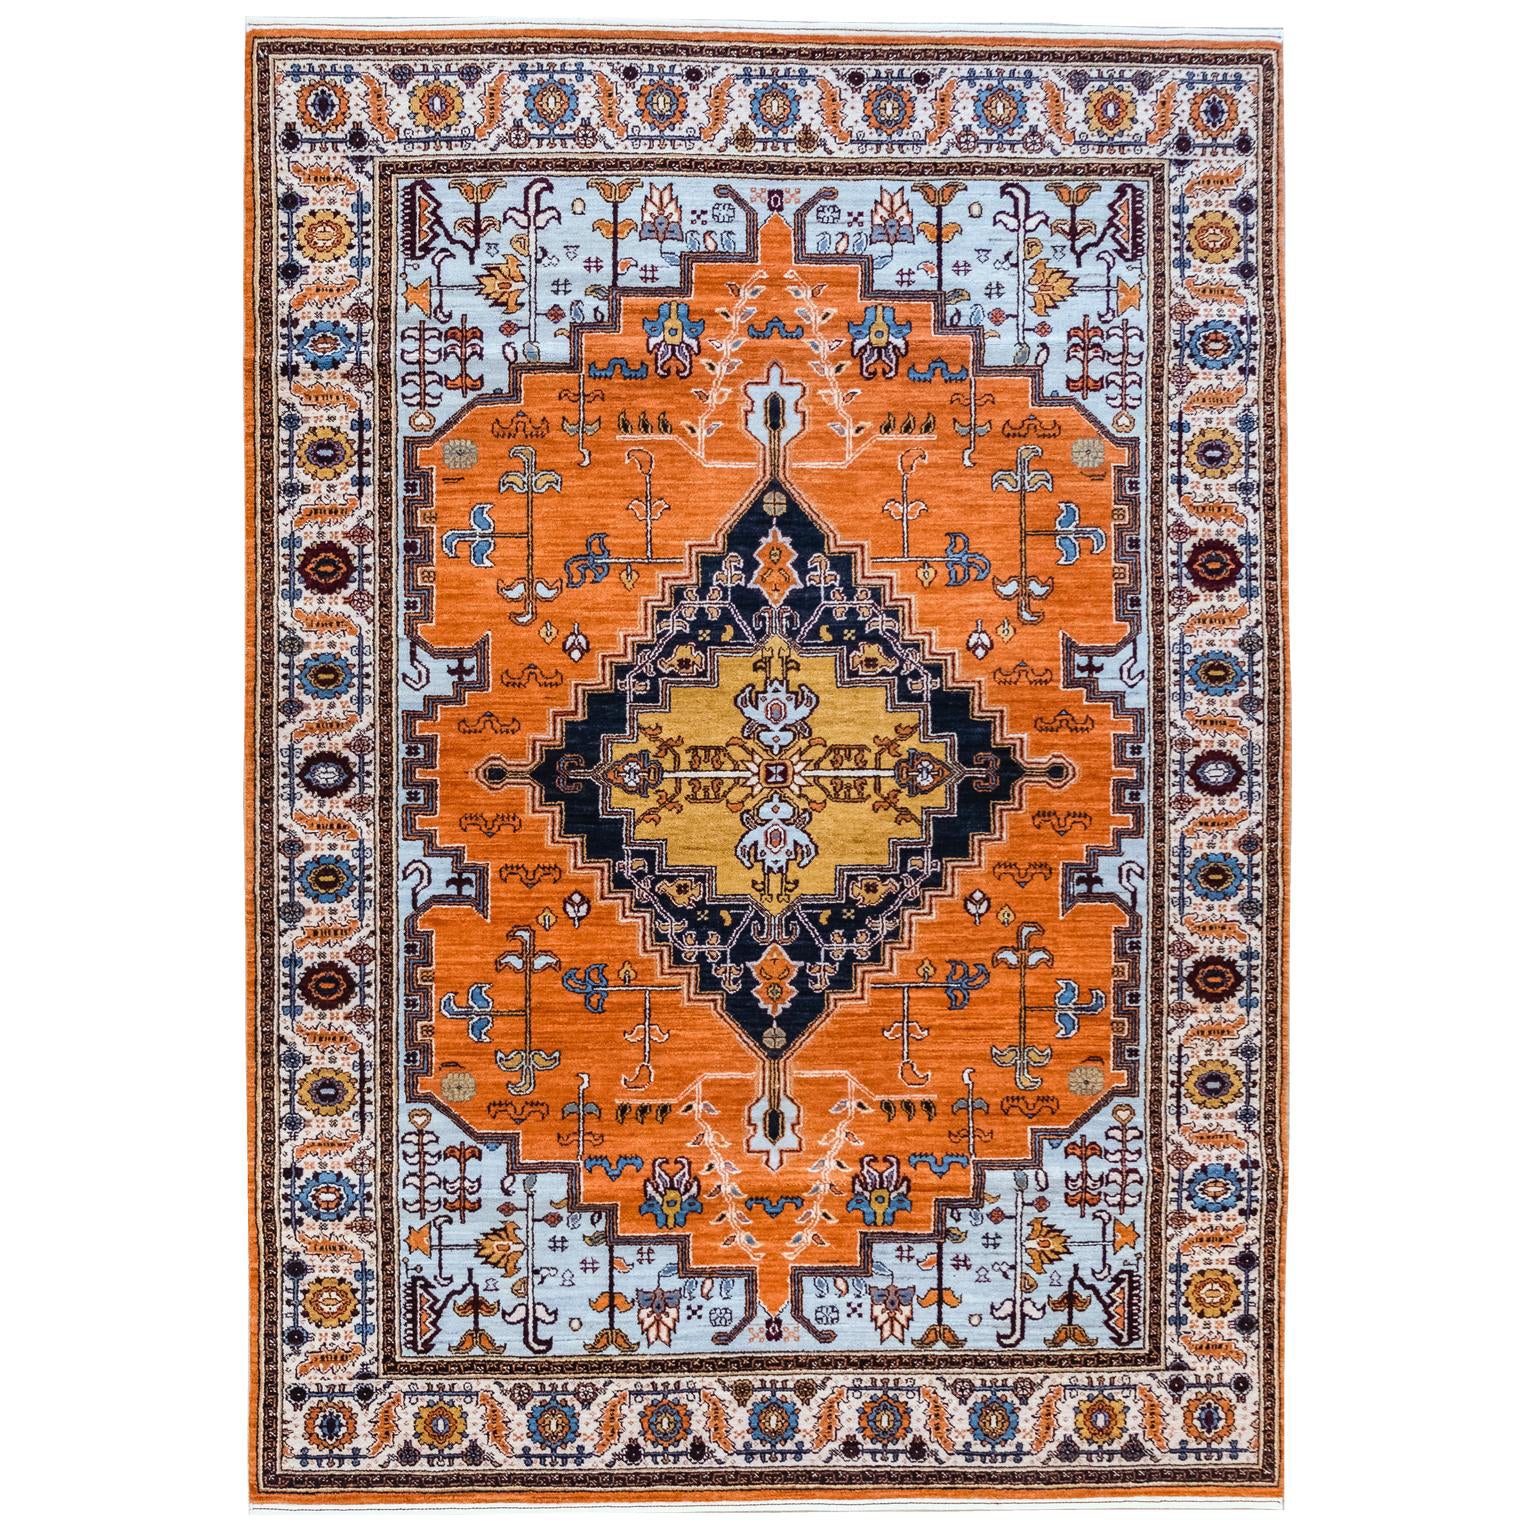 Tapis persan transitionnel orange, bleu et crème en pure laine, 5' x 7' en vente